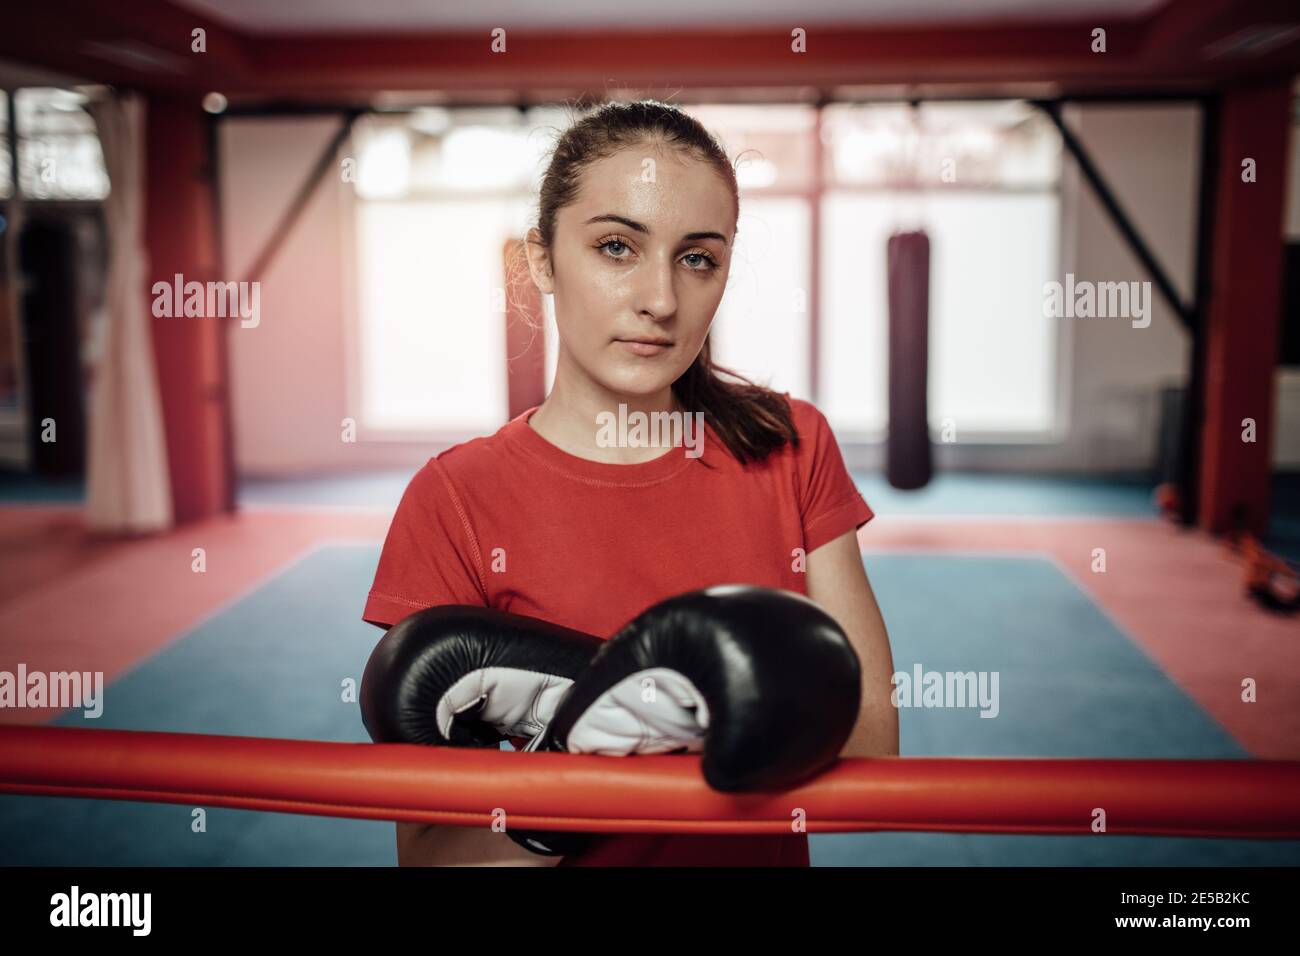 Eine Sportlerin, die nach einem Training im Fitnessstudio Boxhandschuhe trägt. Ein Porträt einer jungen Frau, die nach einer schwierigen Kickboxen-Klasse schwitzt und mich schaut Stockfoto